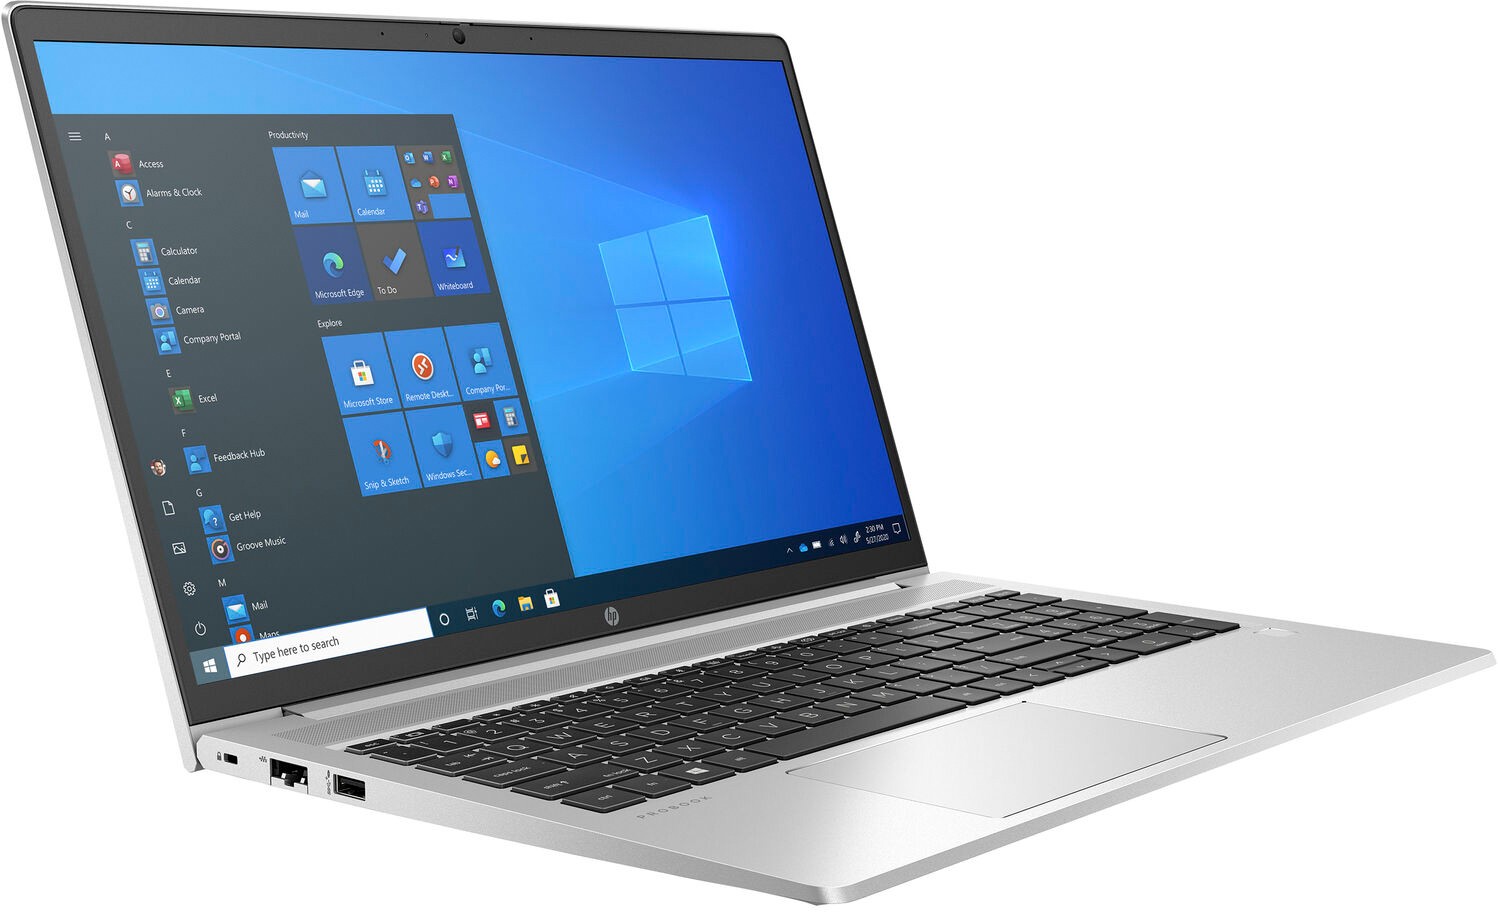 Ноутбук HP ProBook 450 G8 Core i7-1165G7 2.8GHz 15.6" FHD (1920x1080) AG,8Gb DDR4(1),512Gb SSD,45Wh LL,Backlit,FPR,1.8kg,1y,Silver,Dos-39432